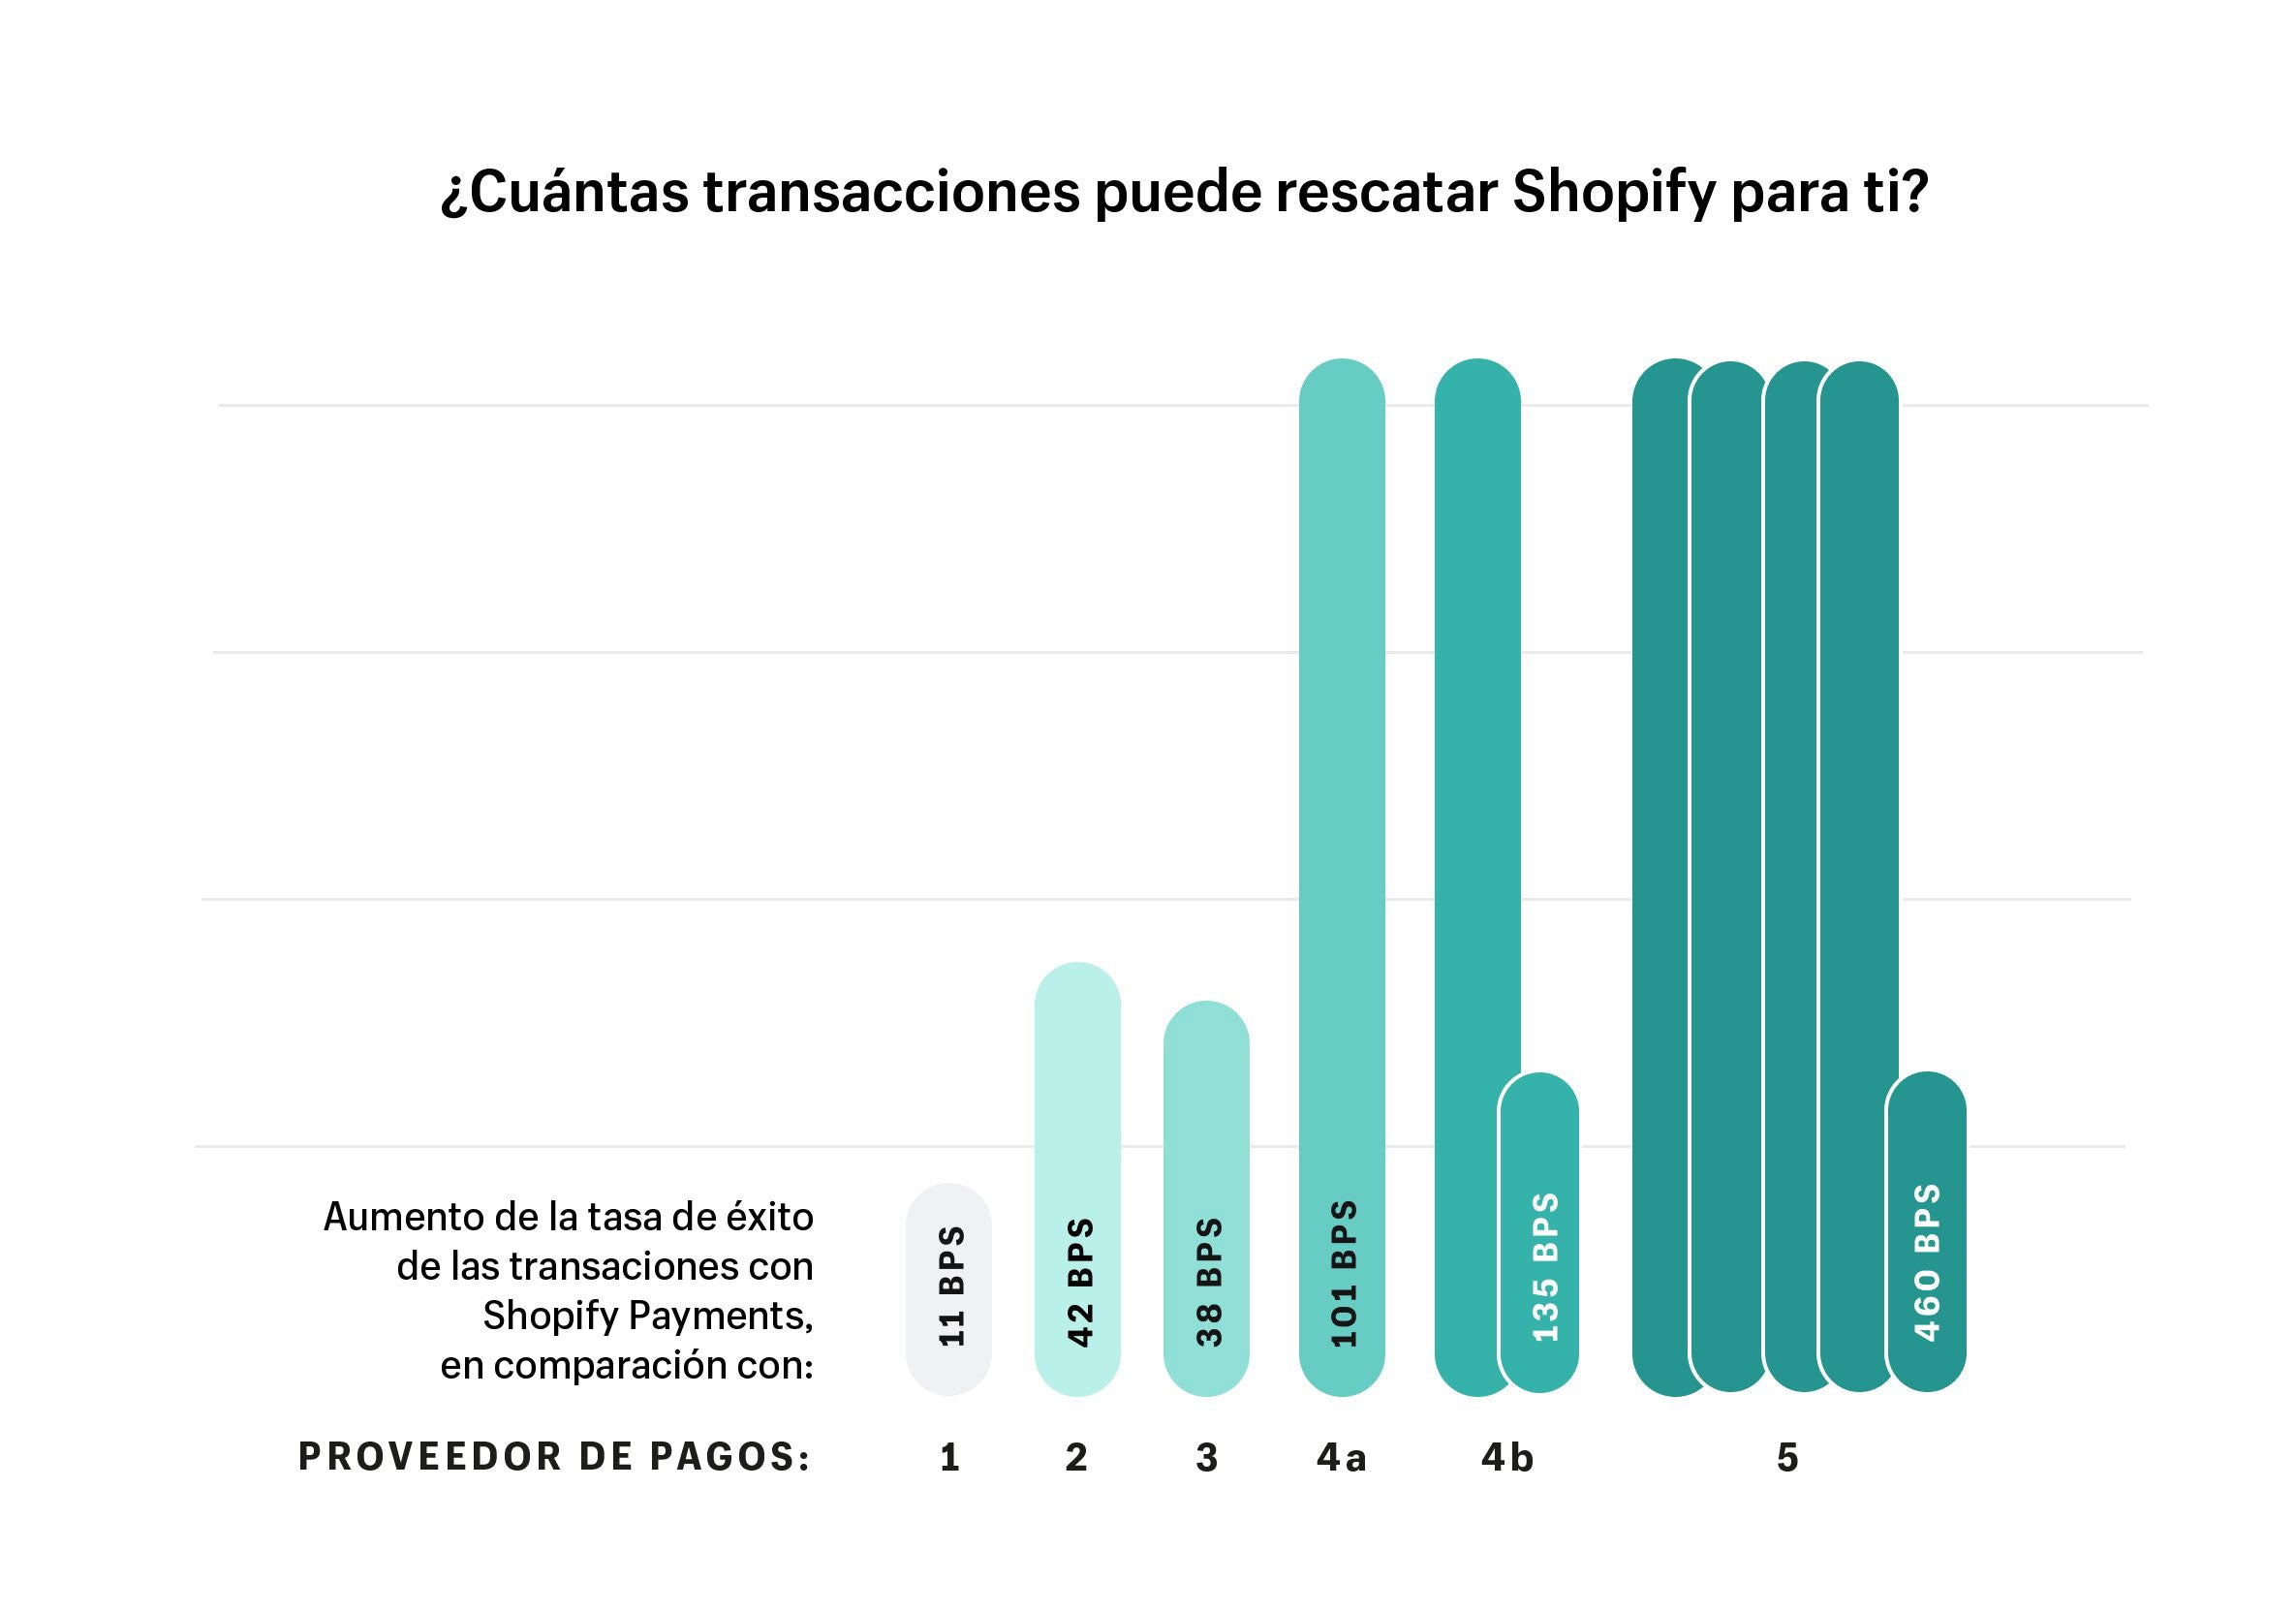 Shopify Payments te hace ganar dinero con tasas de conversión más altas y menos contracargos 4